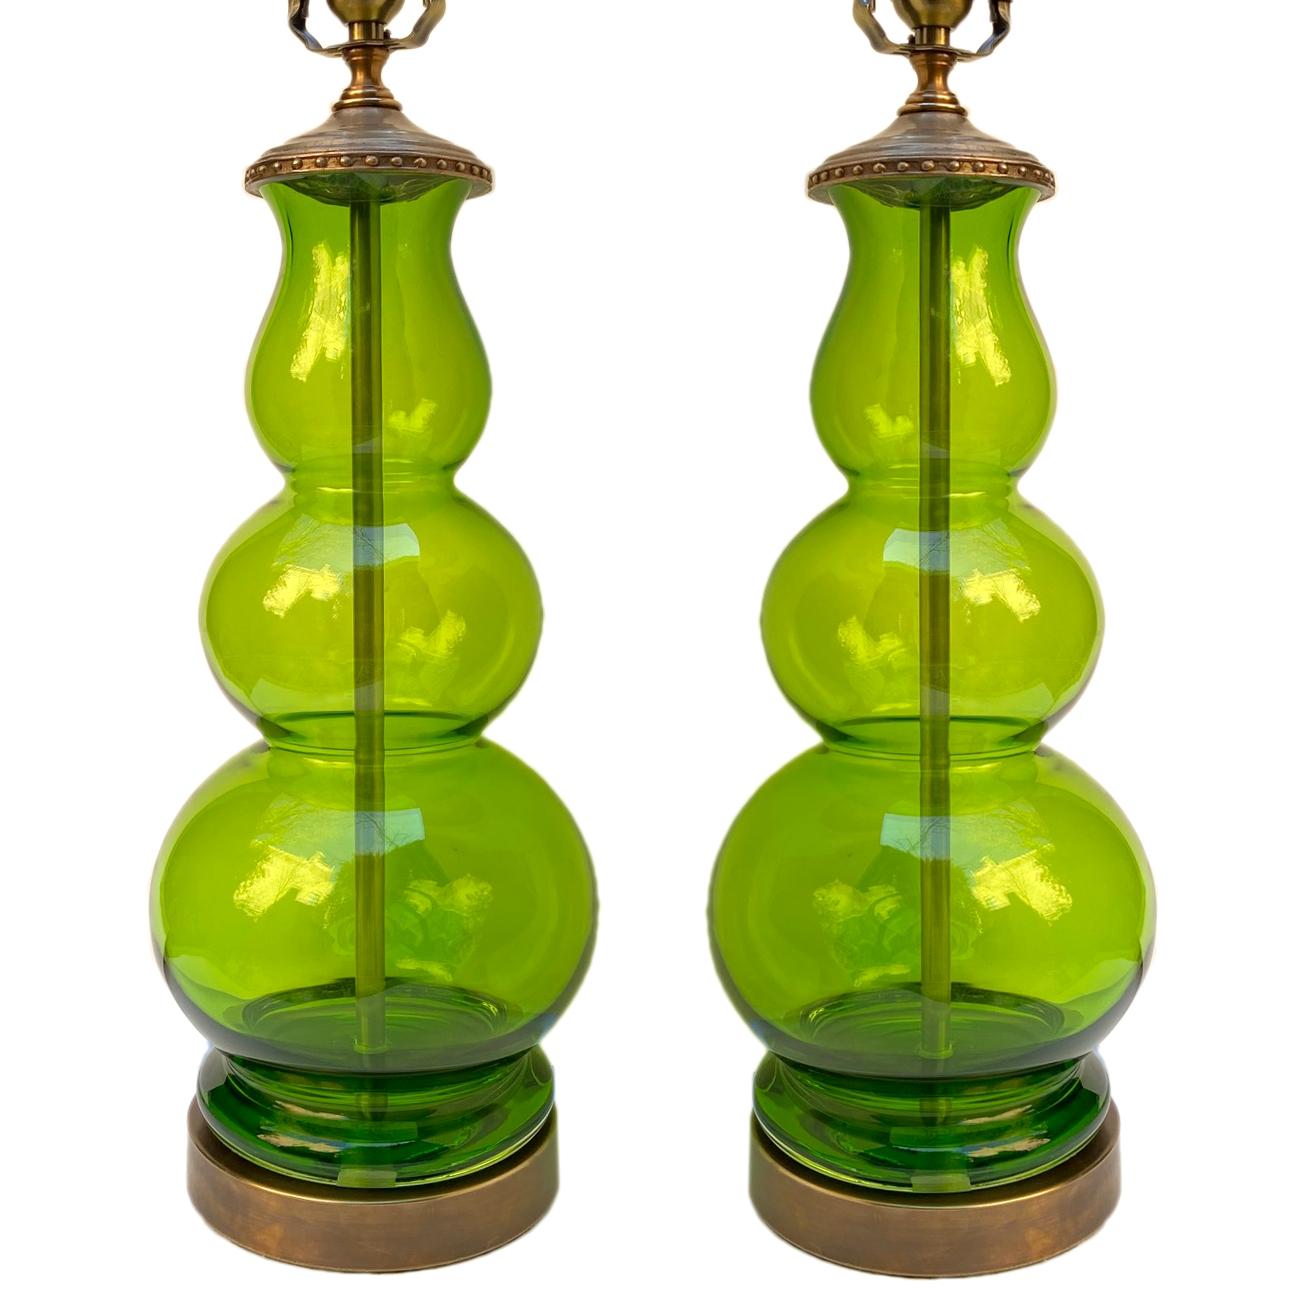 Paire de lampes italiennes en porcelaine de verre soufflé vert, datant des années 1950.

Mesures :
Hauteur du corps 18 pouces
Diamètre au plus large 6